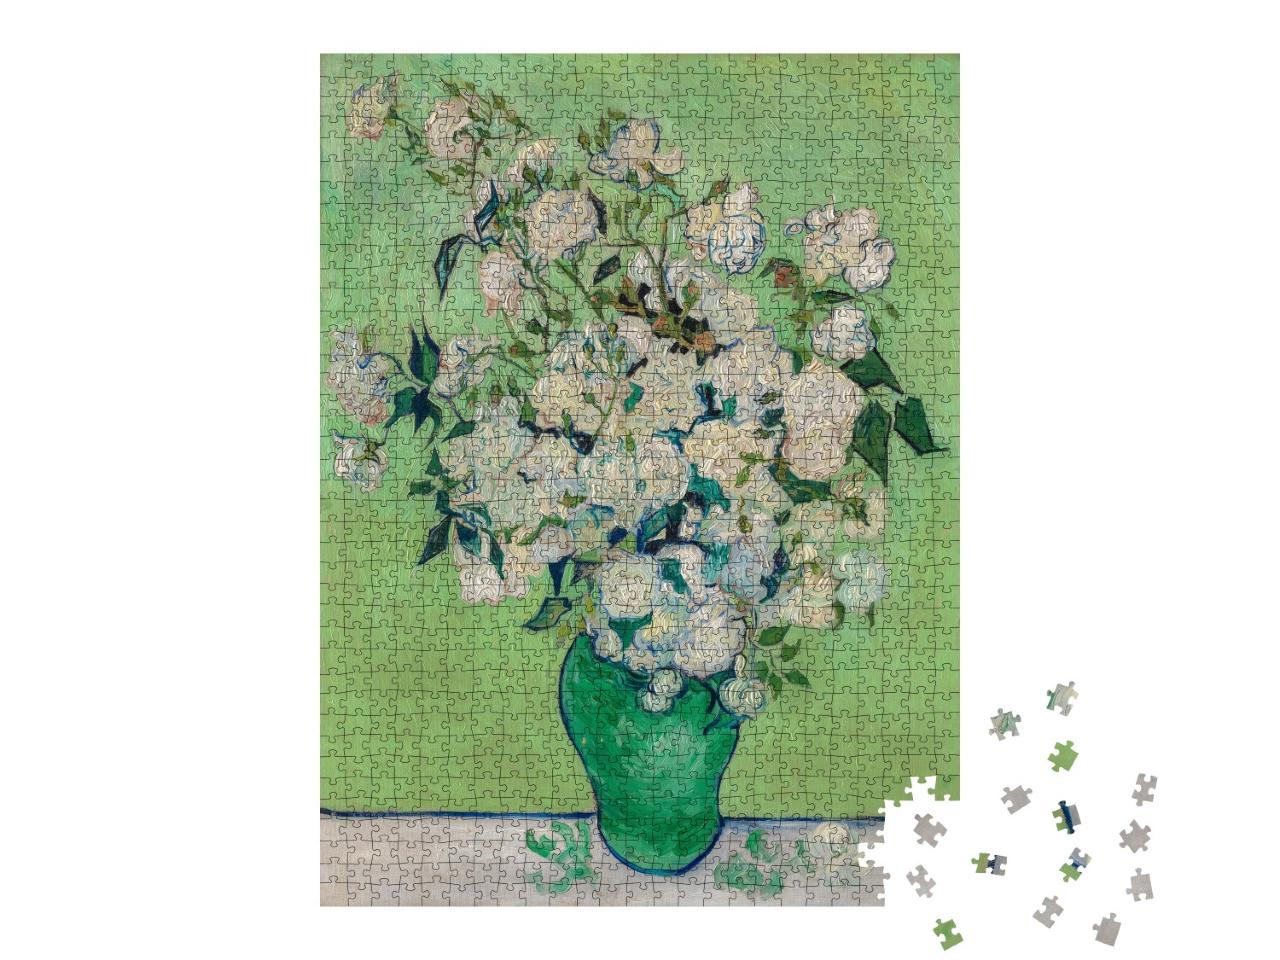 Puzzle 1000 Teile „Vincent van Gogh - Rosen“